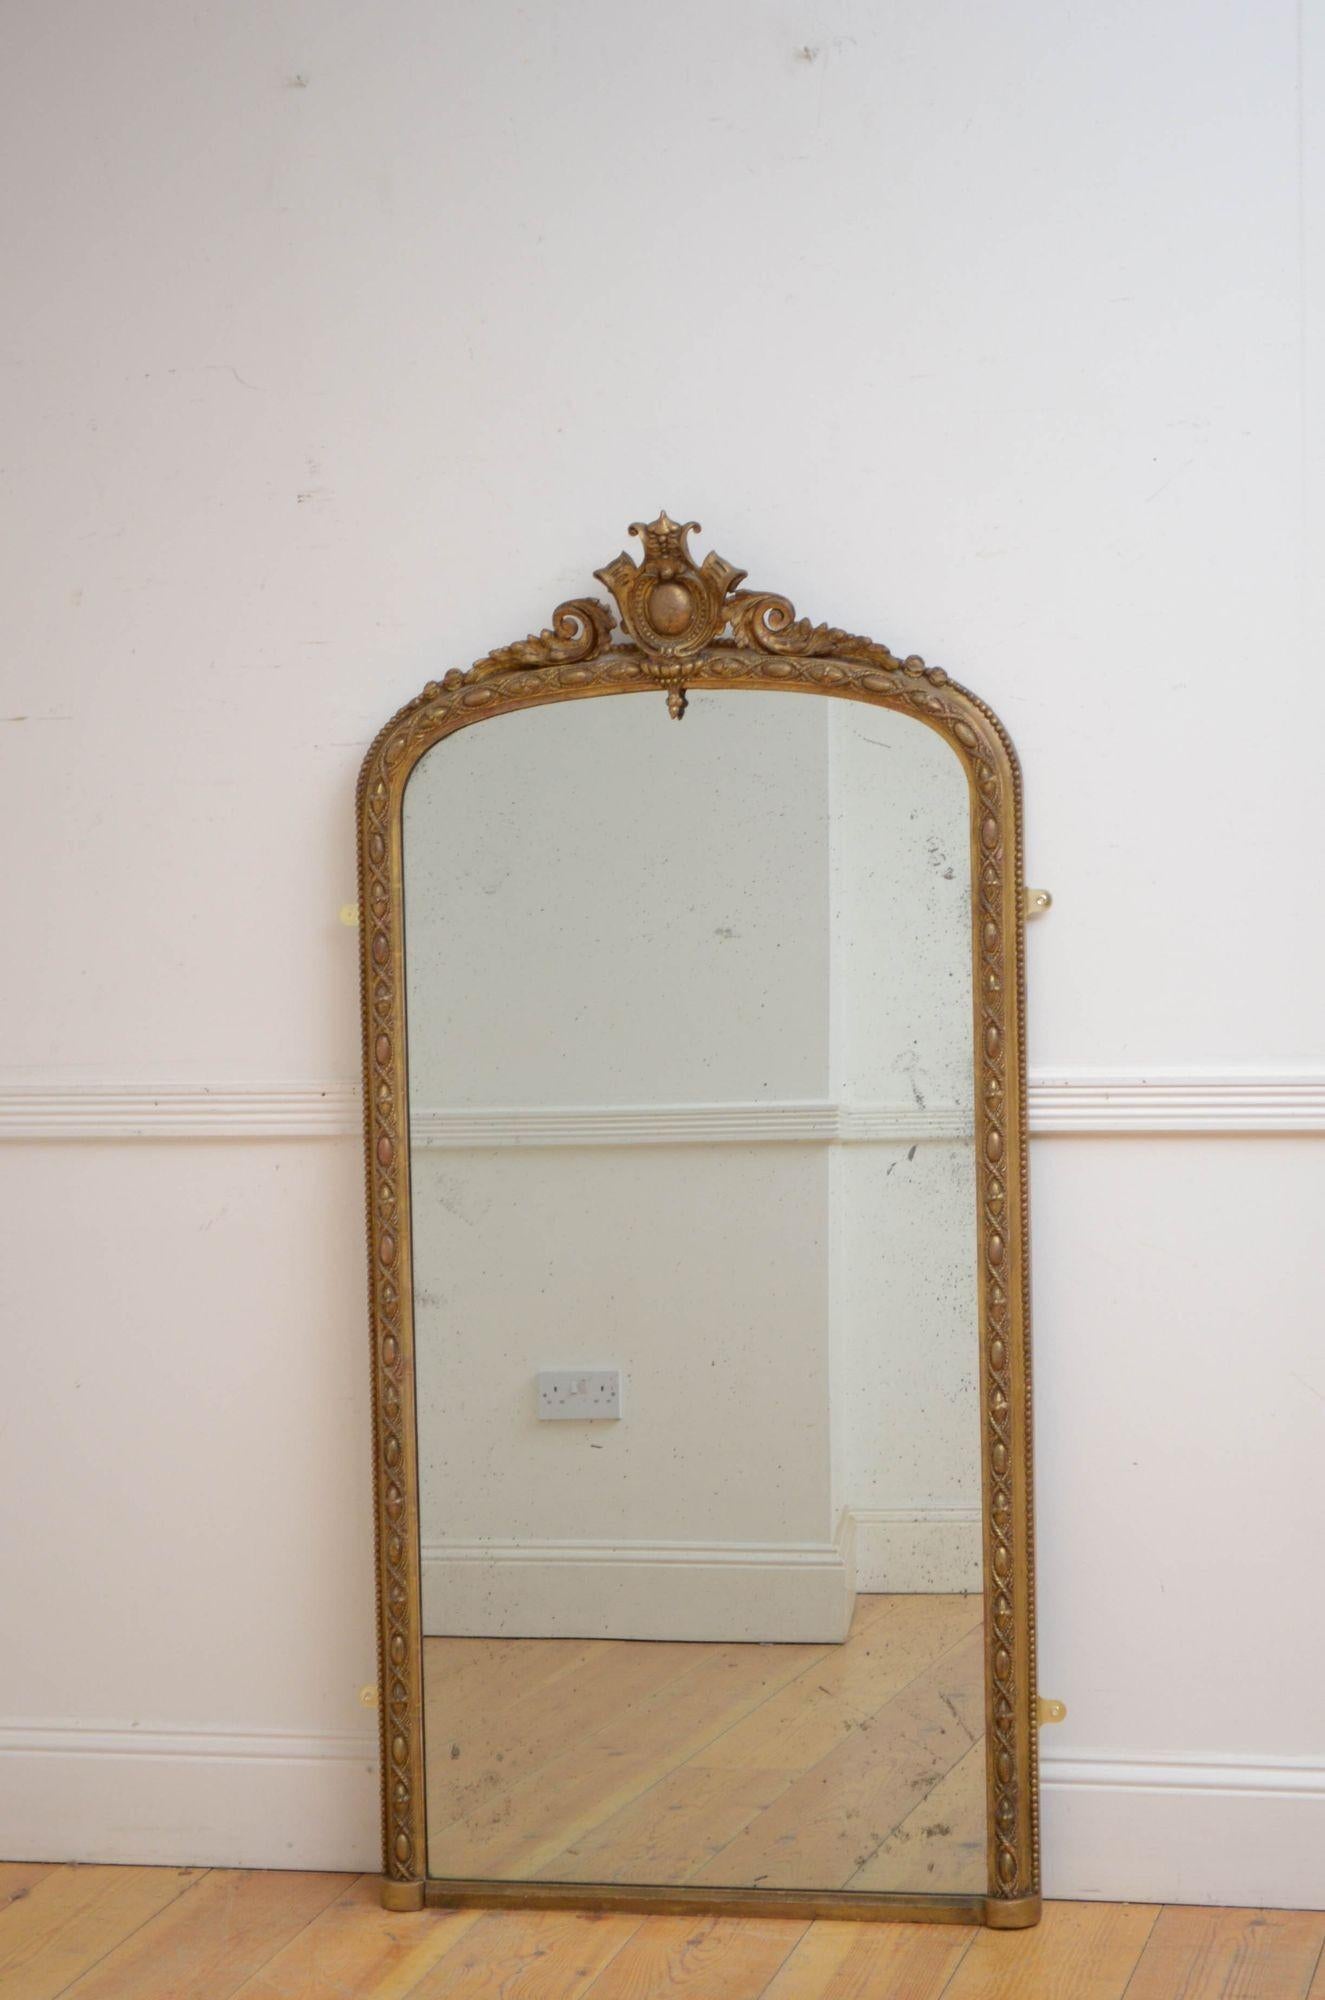 J027 Vergoldeter viktorianischer Konsolenspiegel oder Wandspiegel, mit originalem gefrostetem Glas in vergoldetem, gewölbtem und feinem Rahmen mit wulstigem Außenrand und Scrollkrone in der Mitte. Dieser antike Spiegel hat noch das Originalglas, die